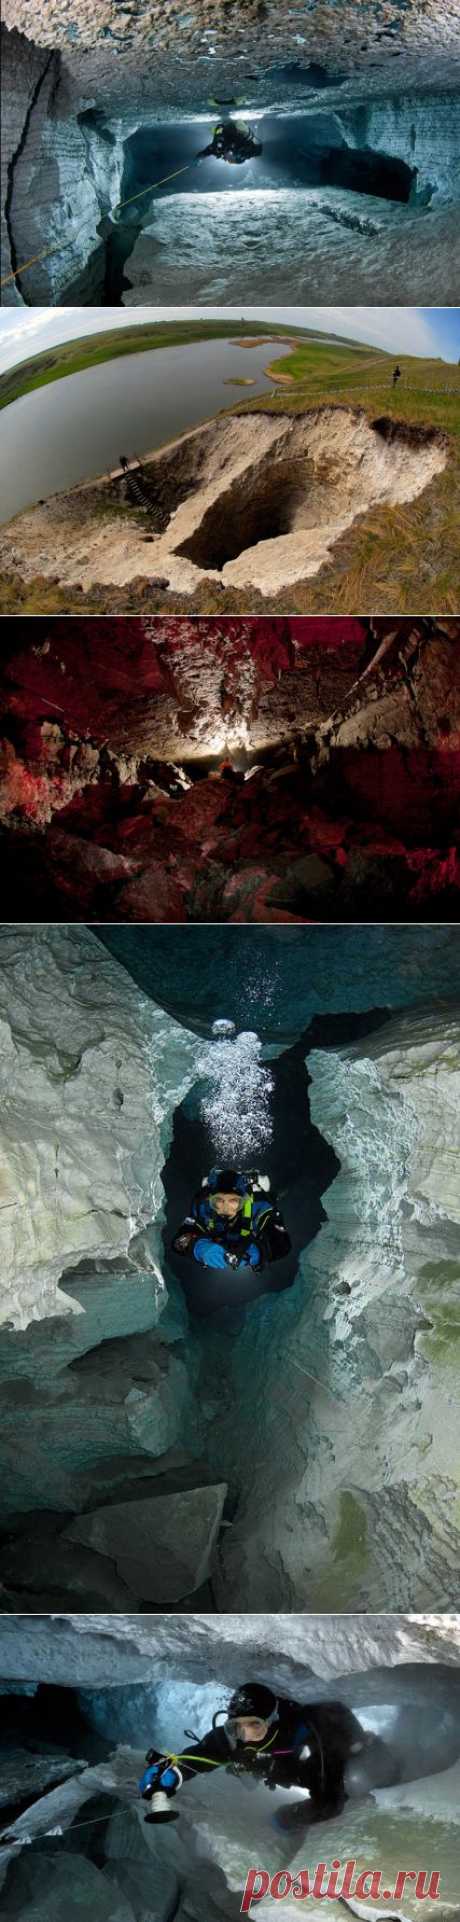 Ординская пещера. Погружение в подводные лабиринты